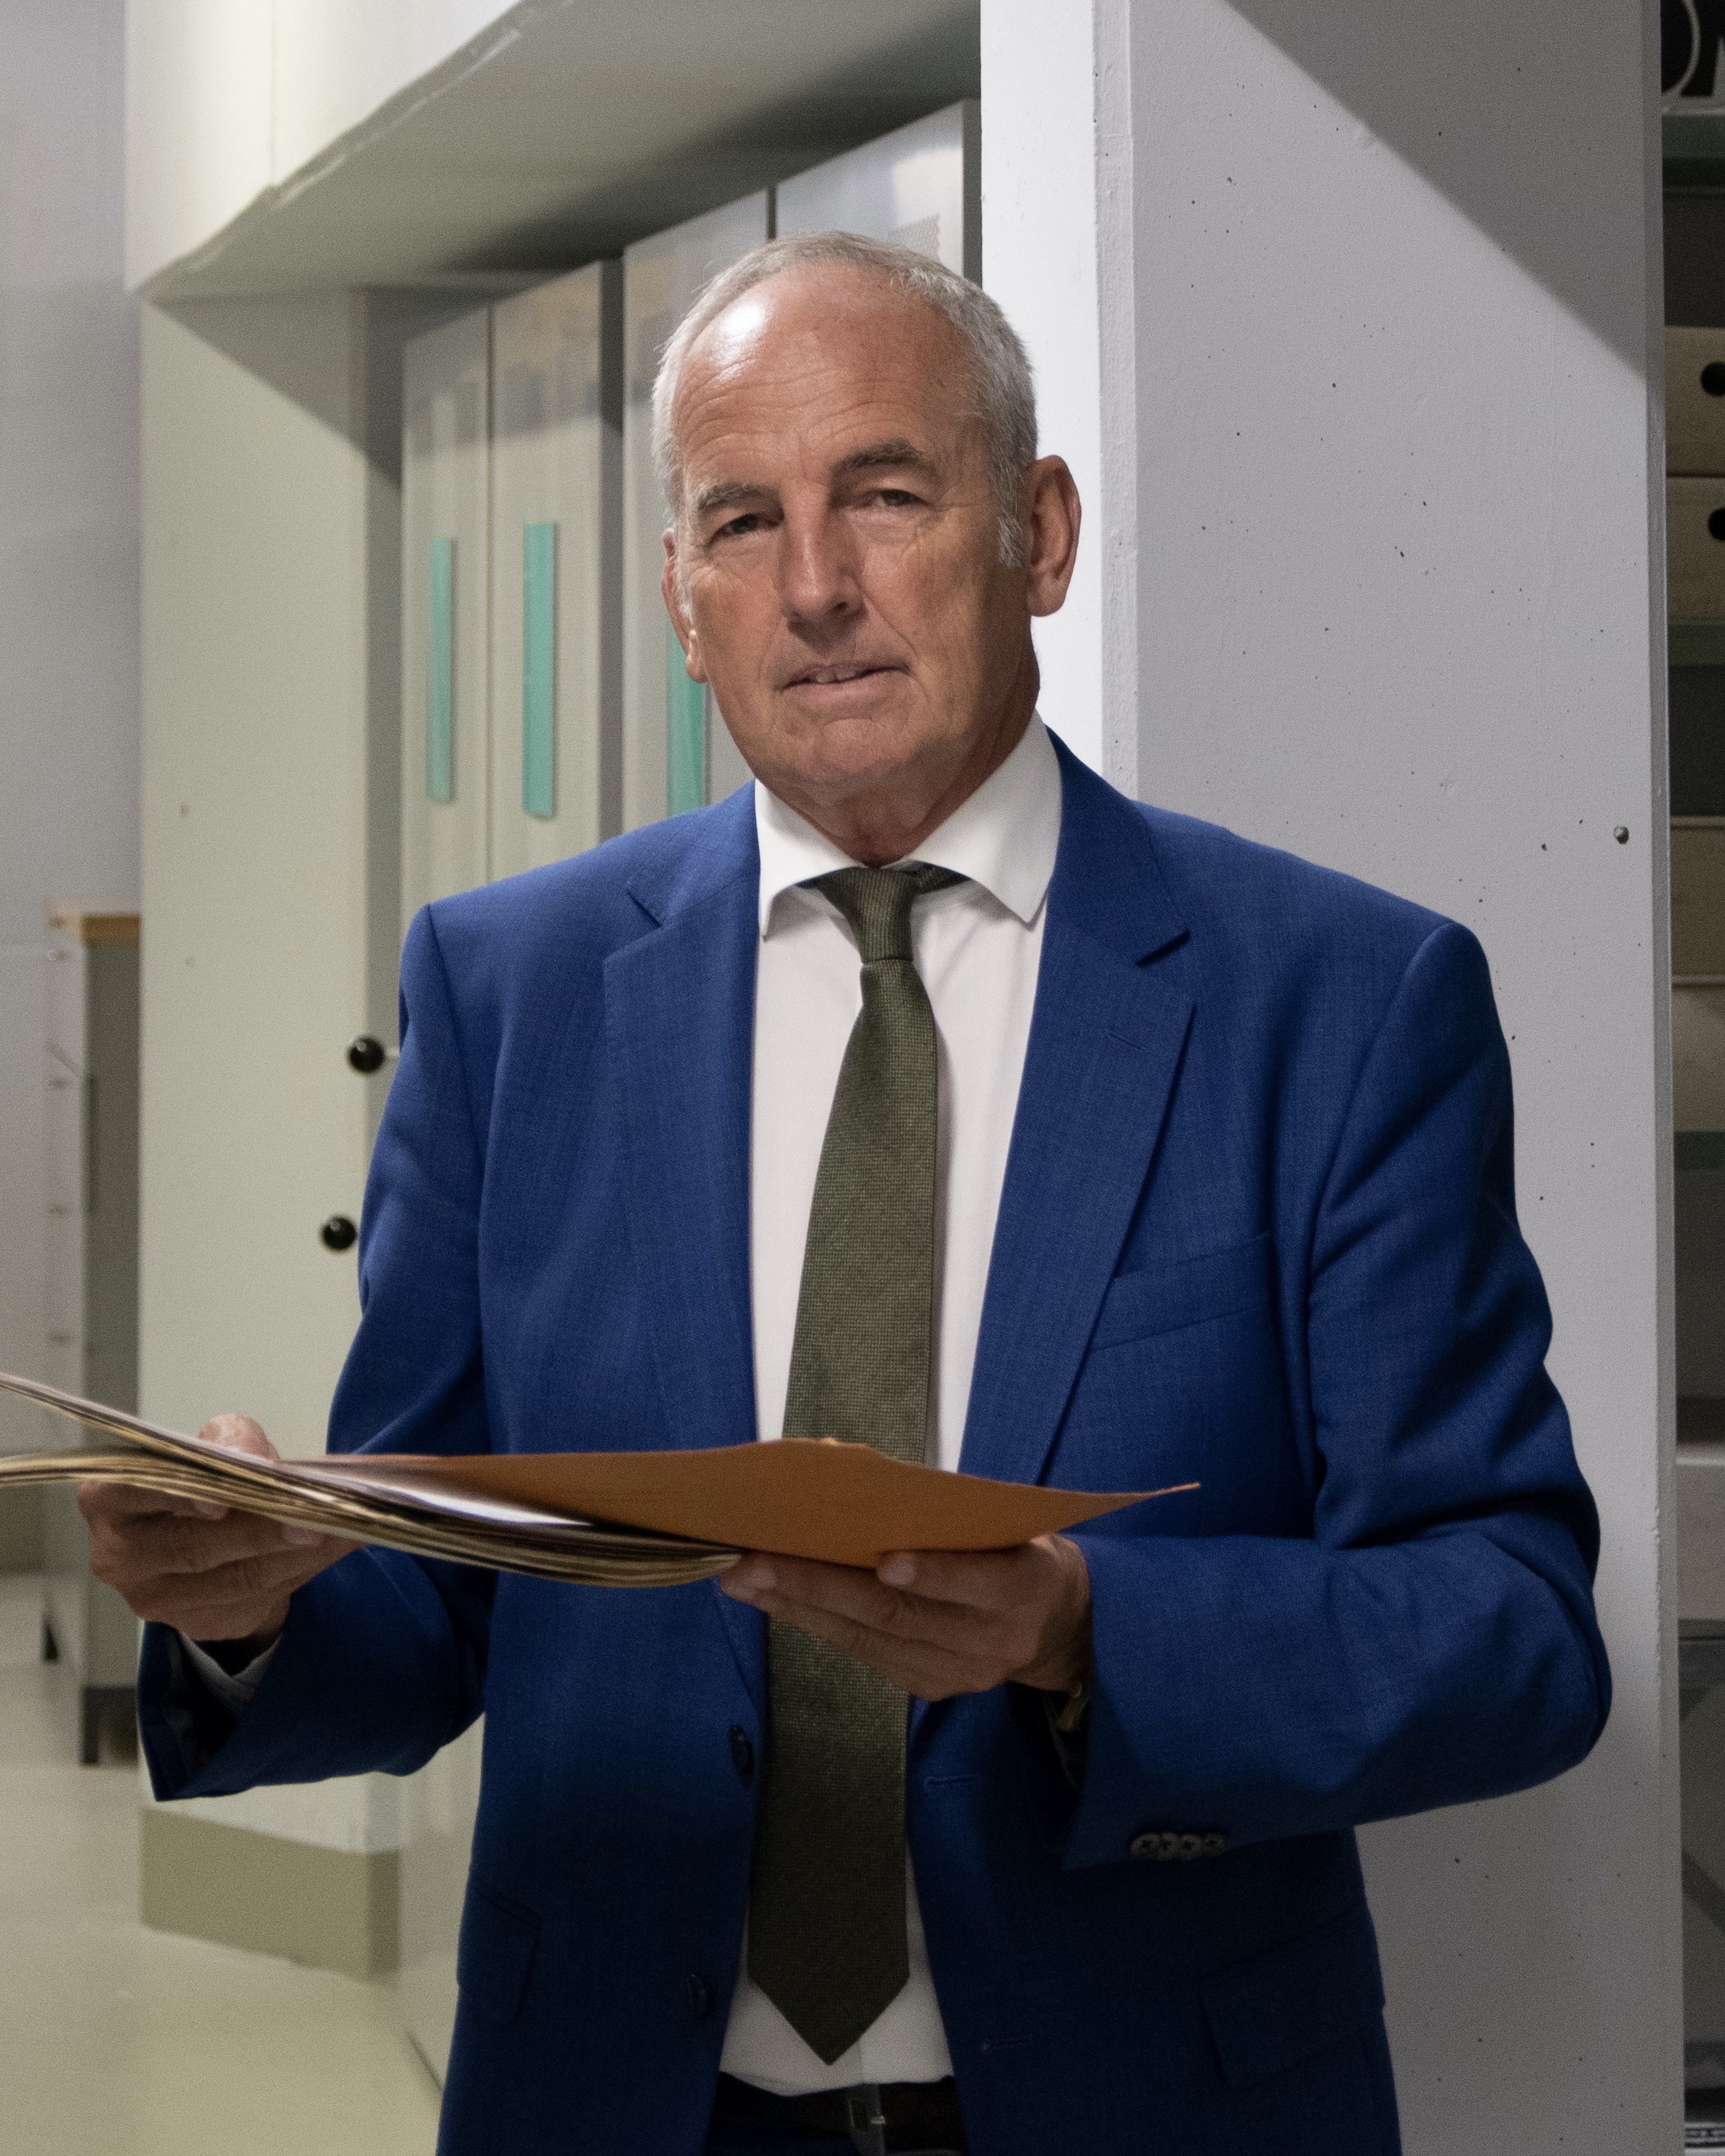 Prof. Dr. Joachim Scholtyseck, Corporate archive, 2022, Porsche AG